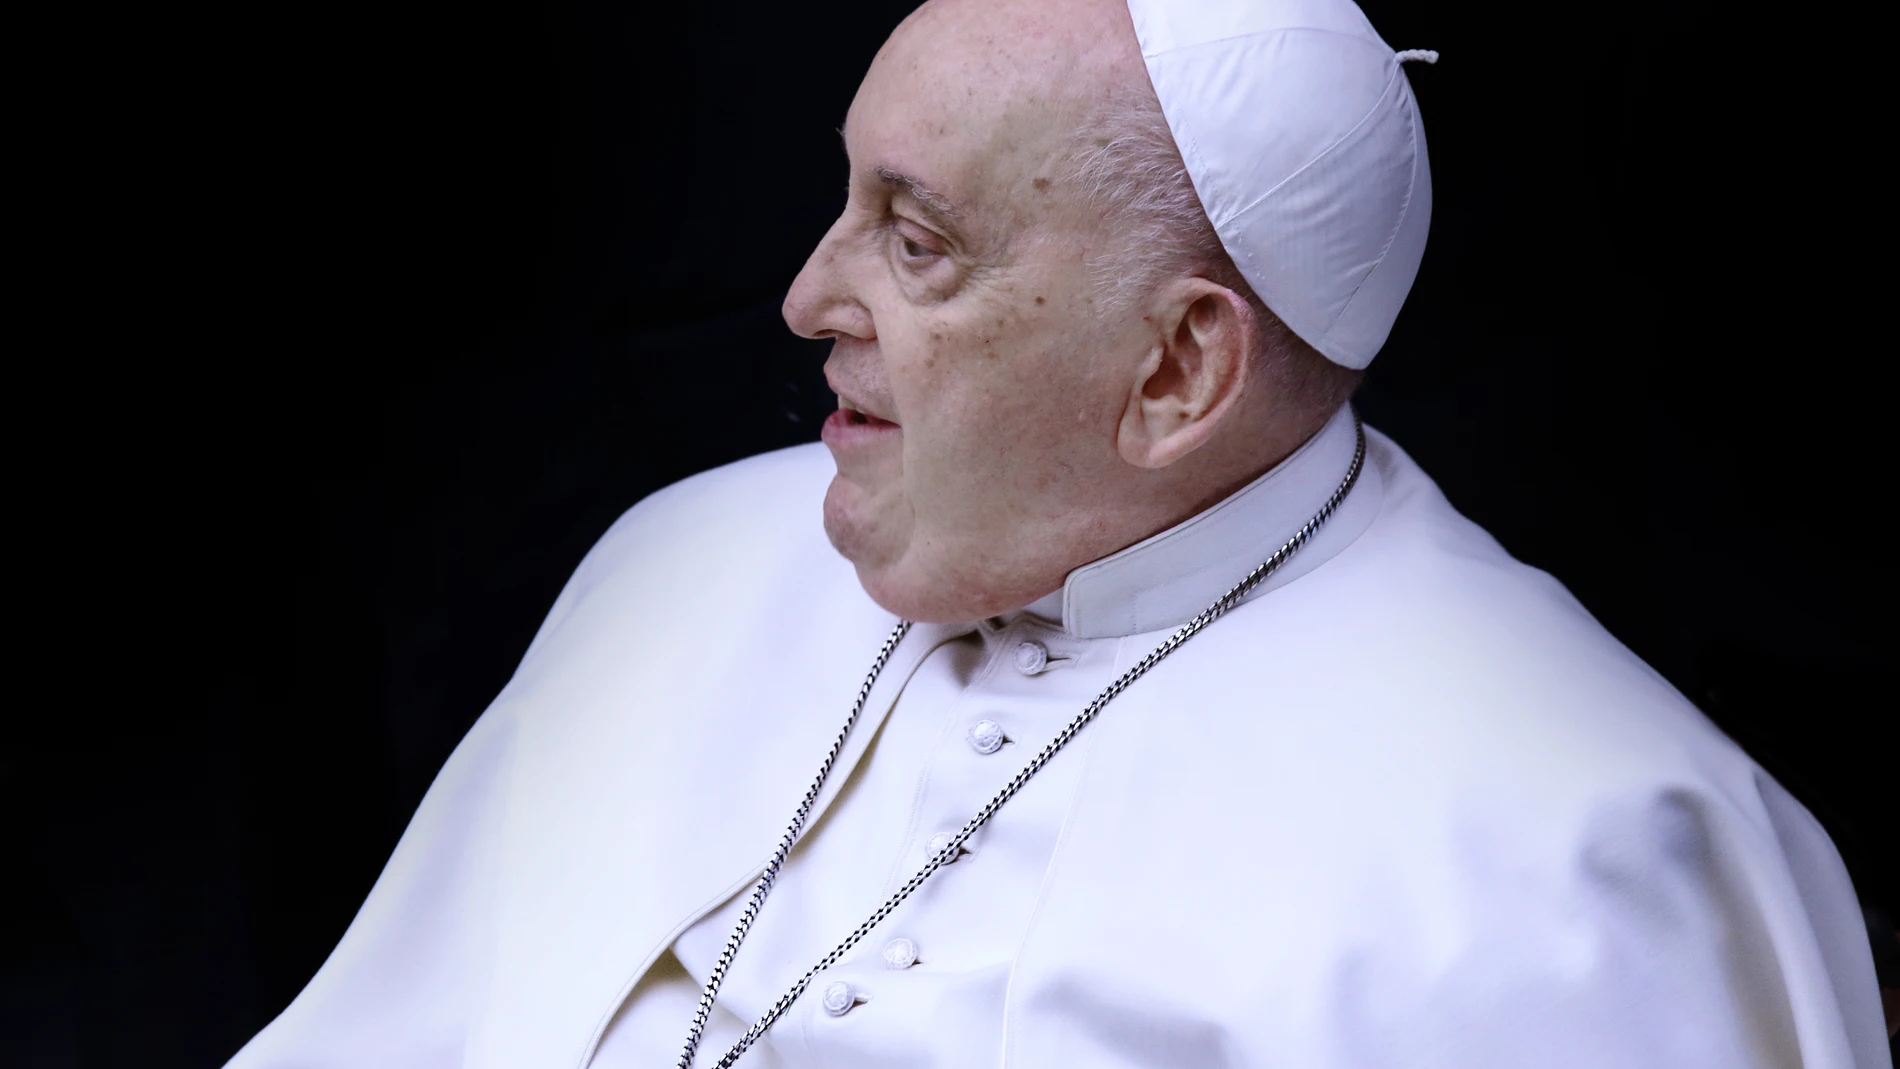 El Papa pide a la Iglesia dialogar sin miedo sobre grandes temas actuales y acoger al que se siente abandonado por Dios